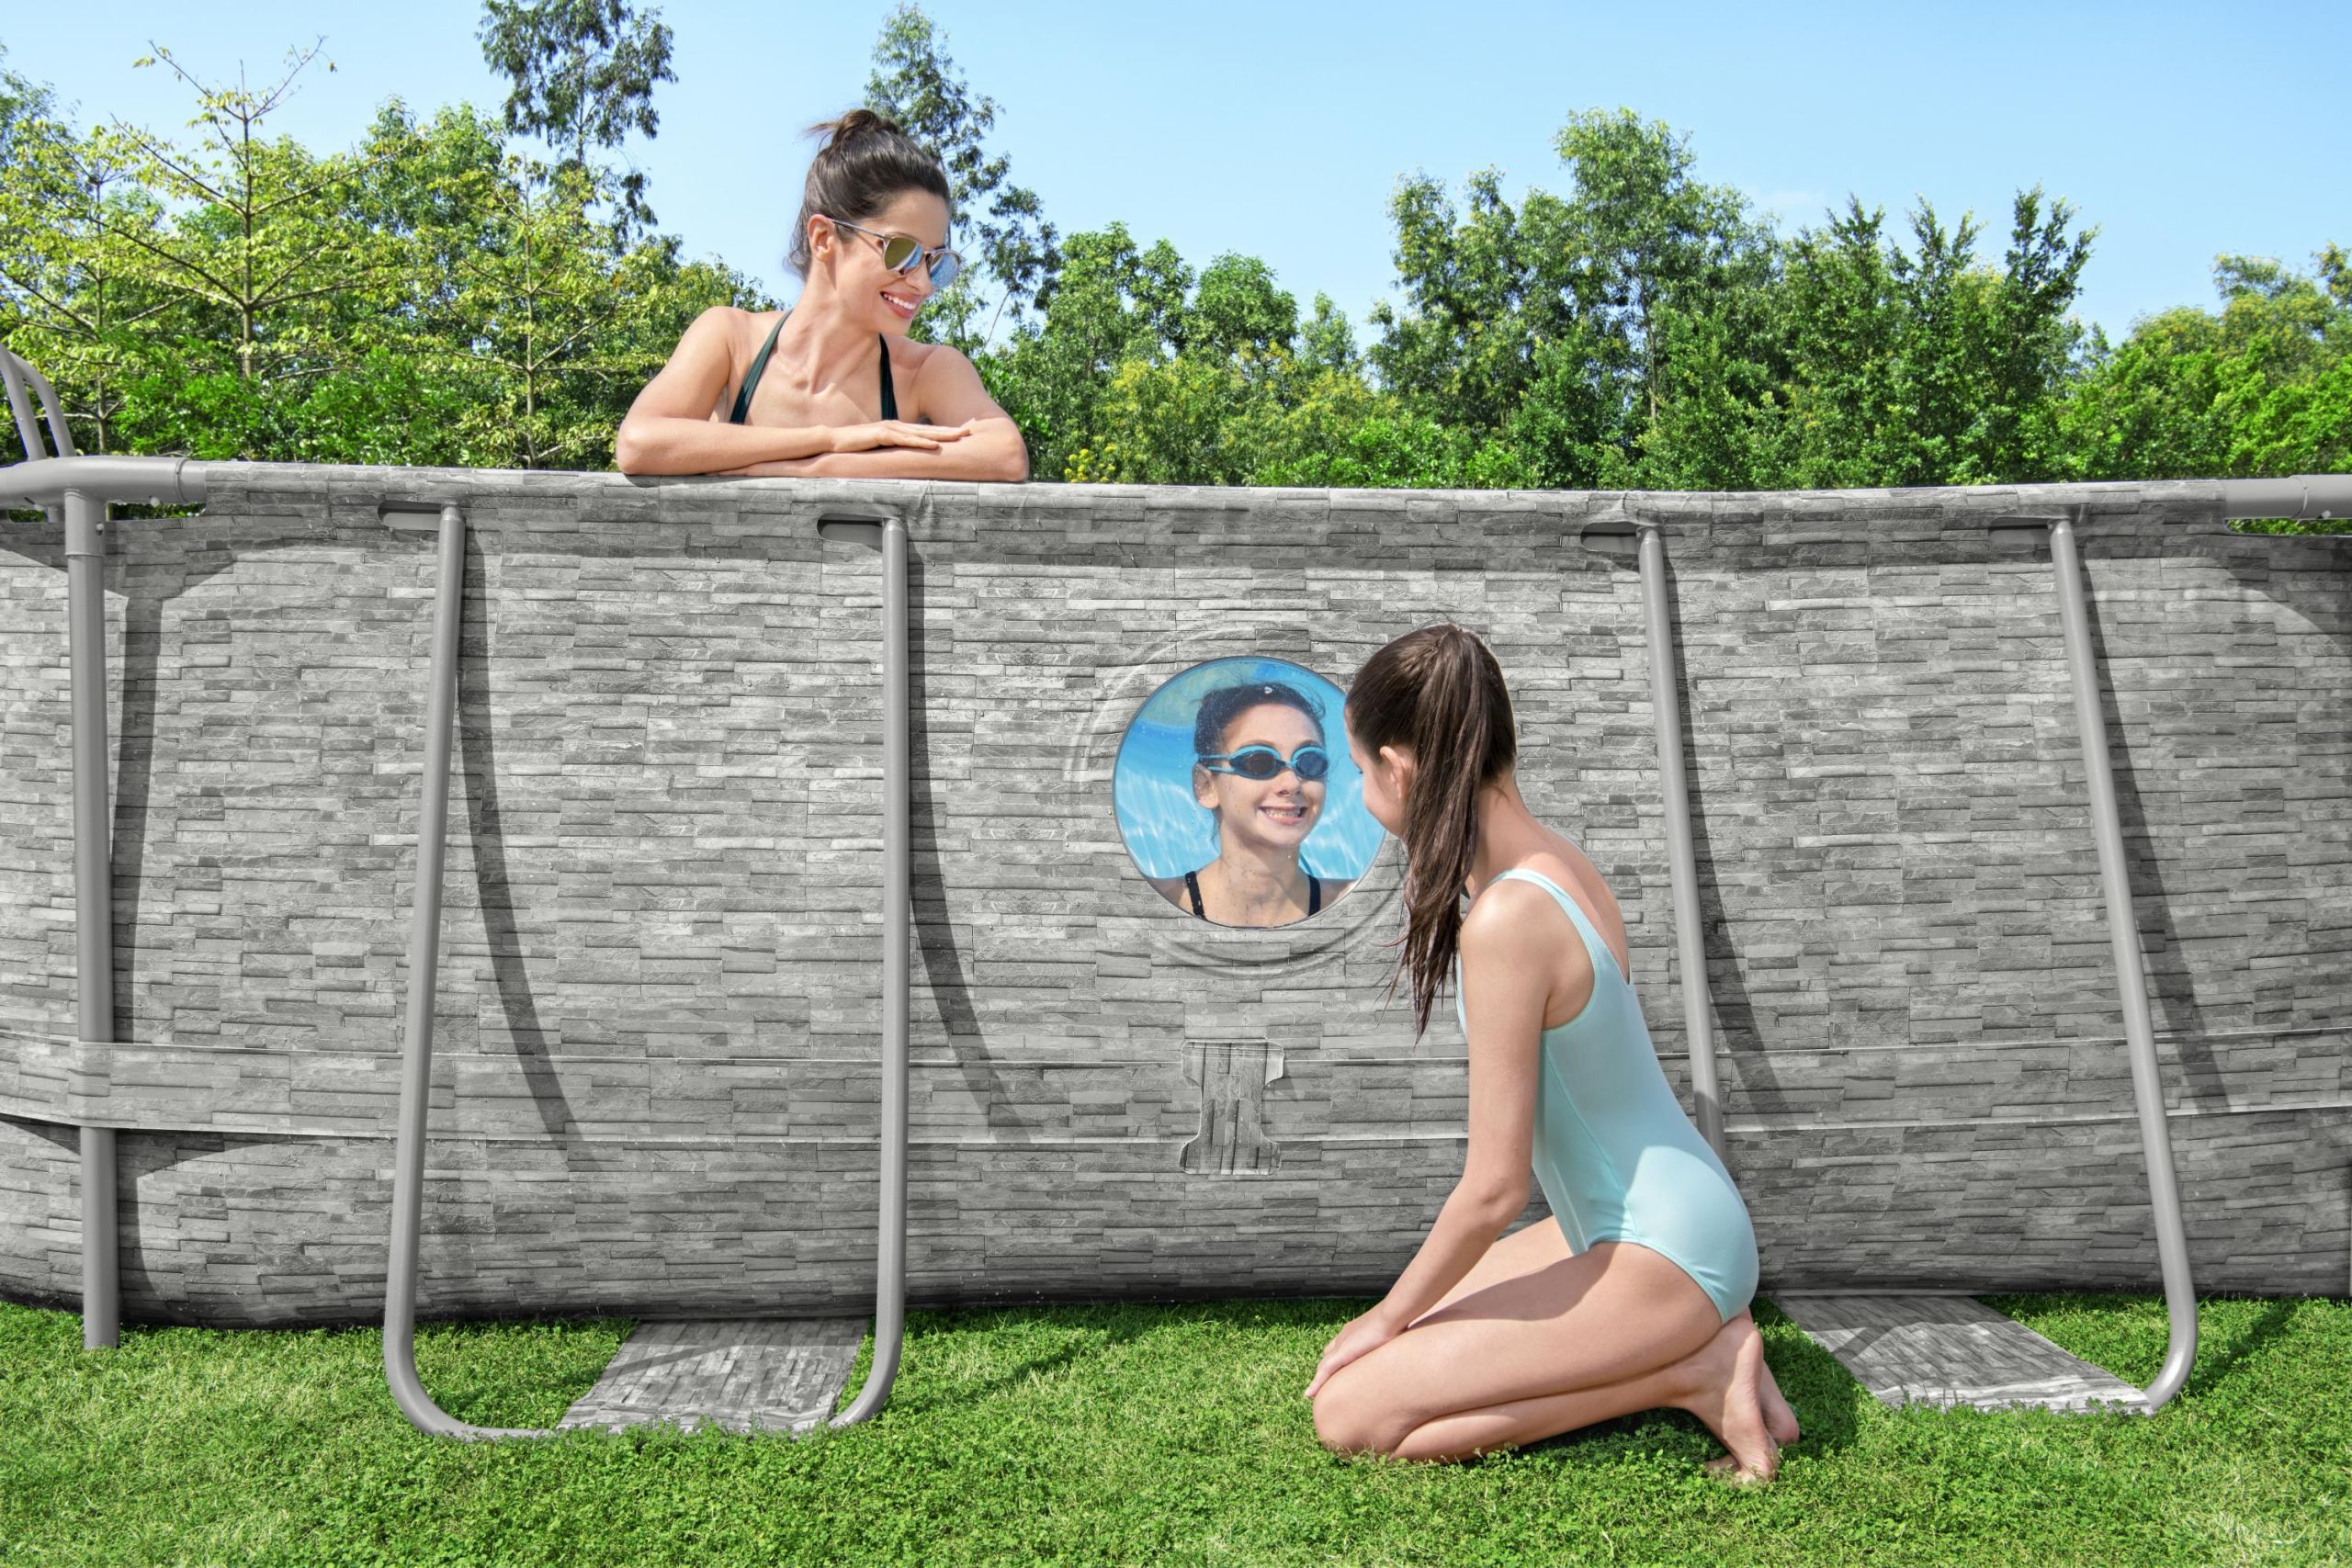 Kit complet piscine Power Steel™ 549 x 274 x 122 cm rectangulaire